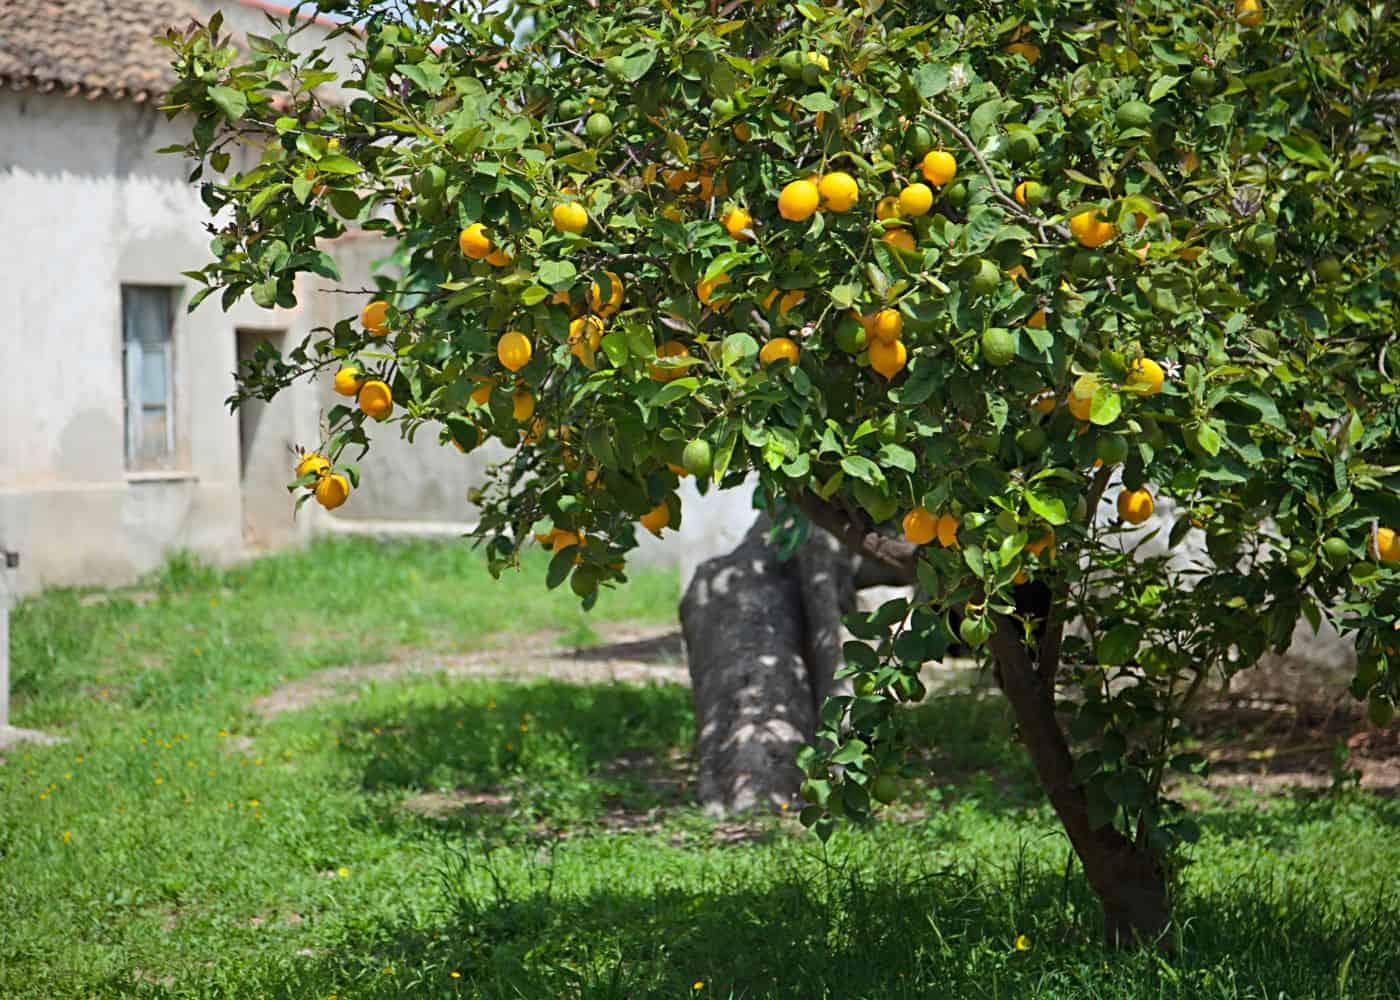 Old lemon tree in europe